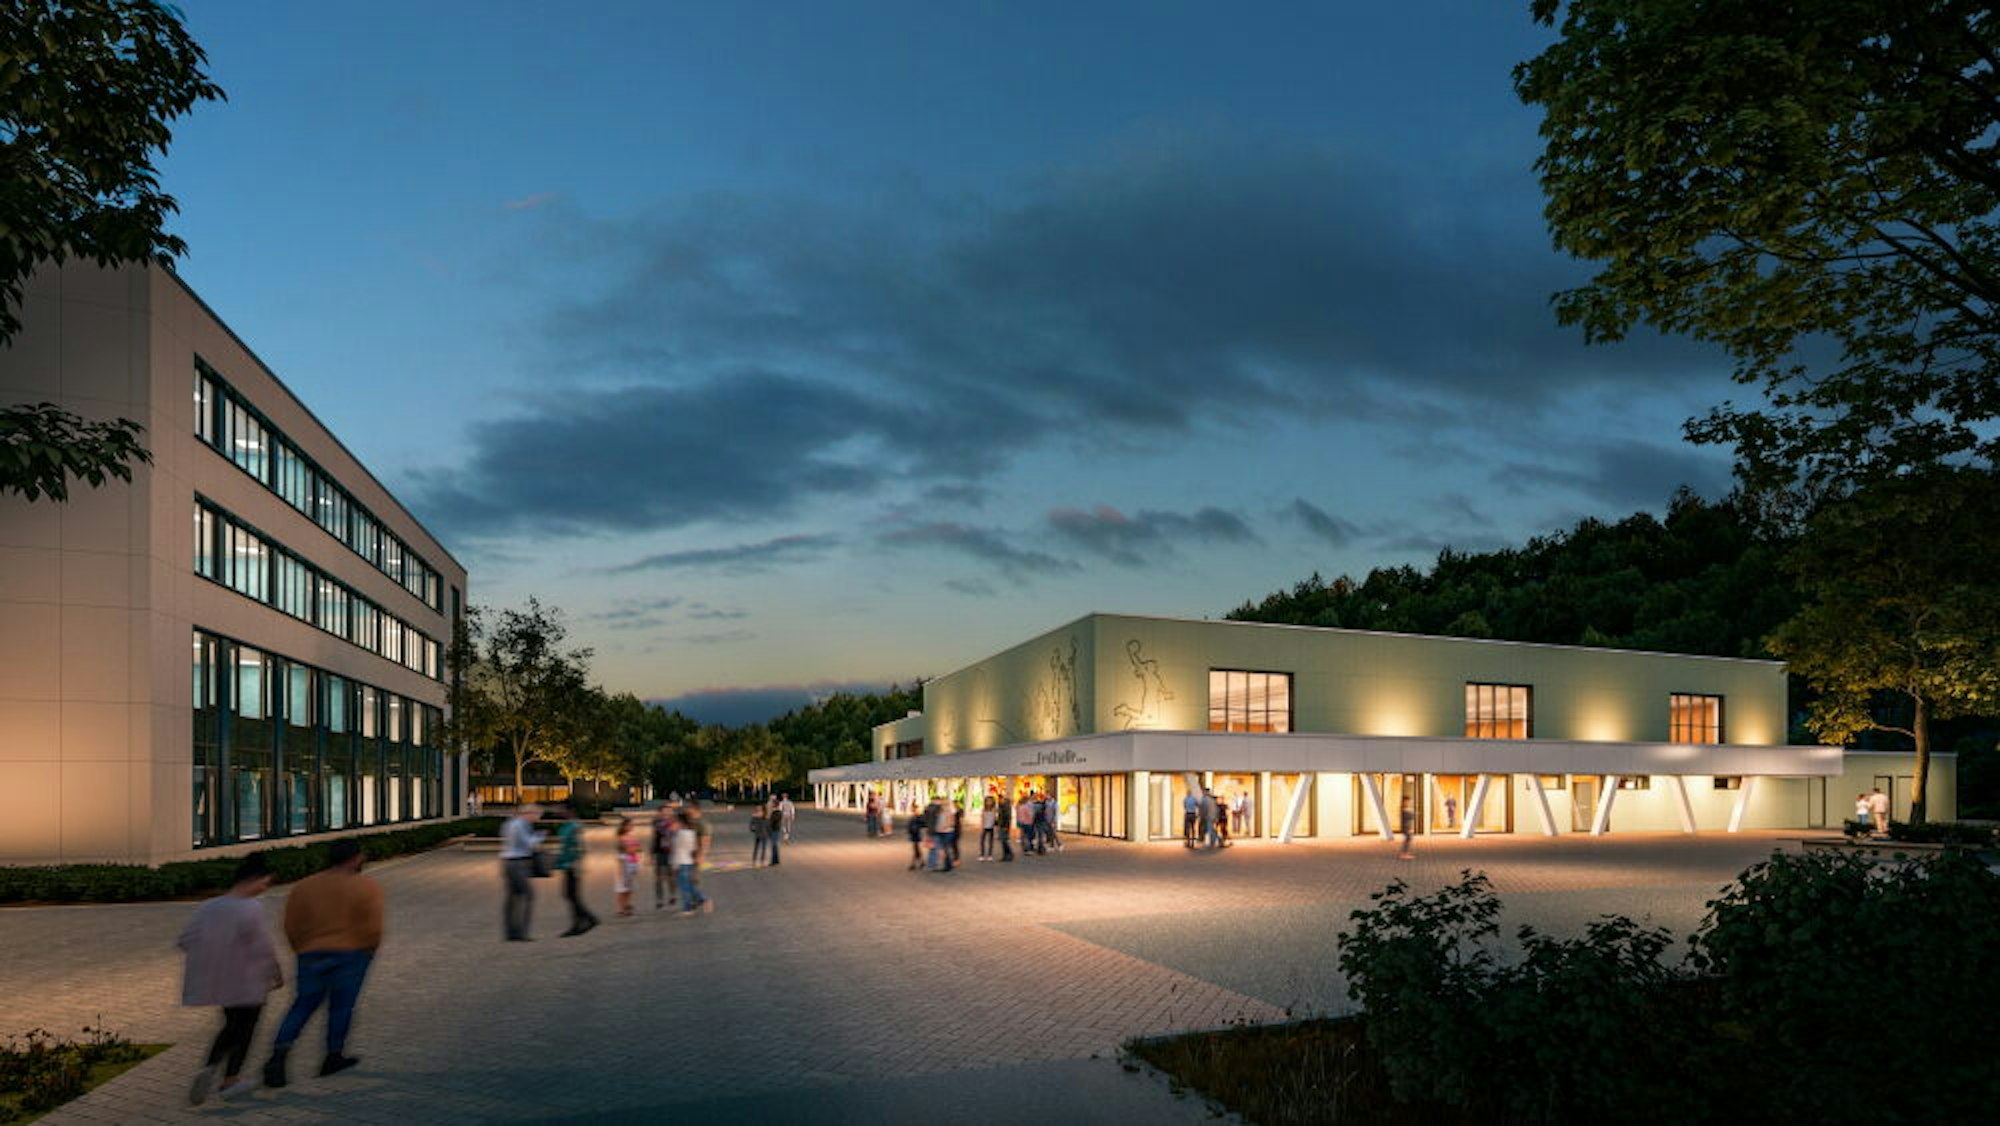 Nicht nur Schulgebäude, sondern auch Veranstaltungsort für bis zu 1600 Menschen: So stellen sich die Architekten die neue Sülztalhalle mit Arkaden (rechts im Bild) vor.